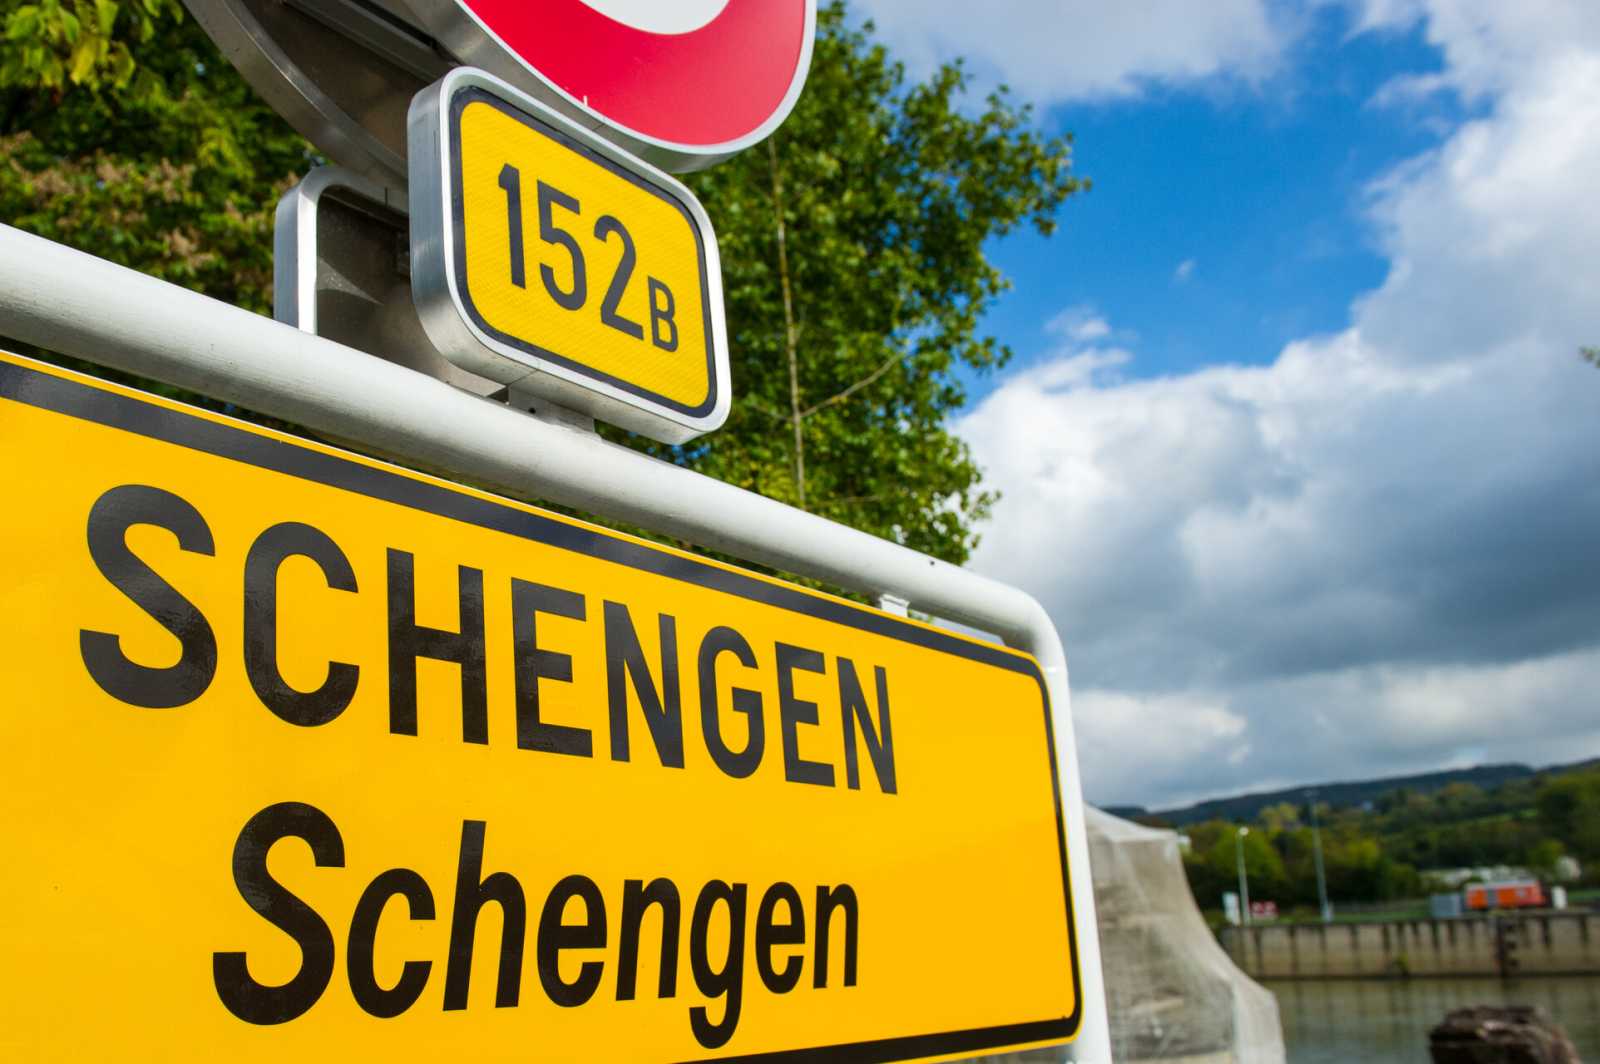 Iohannis nem mondott időpontot a várt schengeni csatlakozással kapcsolatban Fotó: AdobeStock